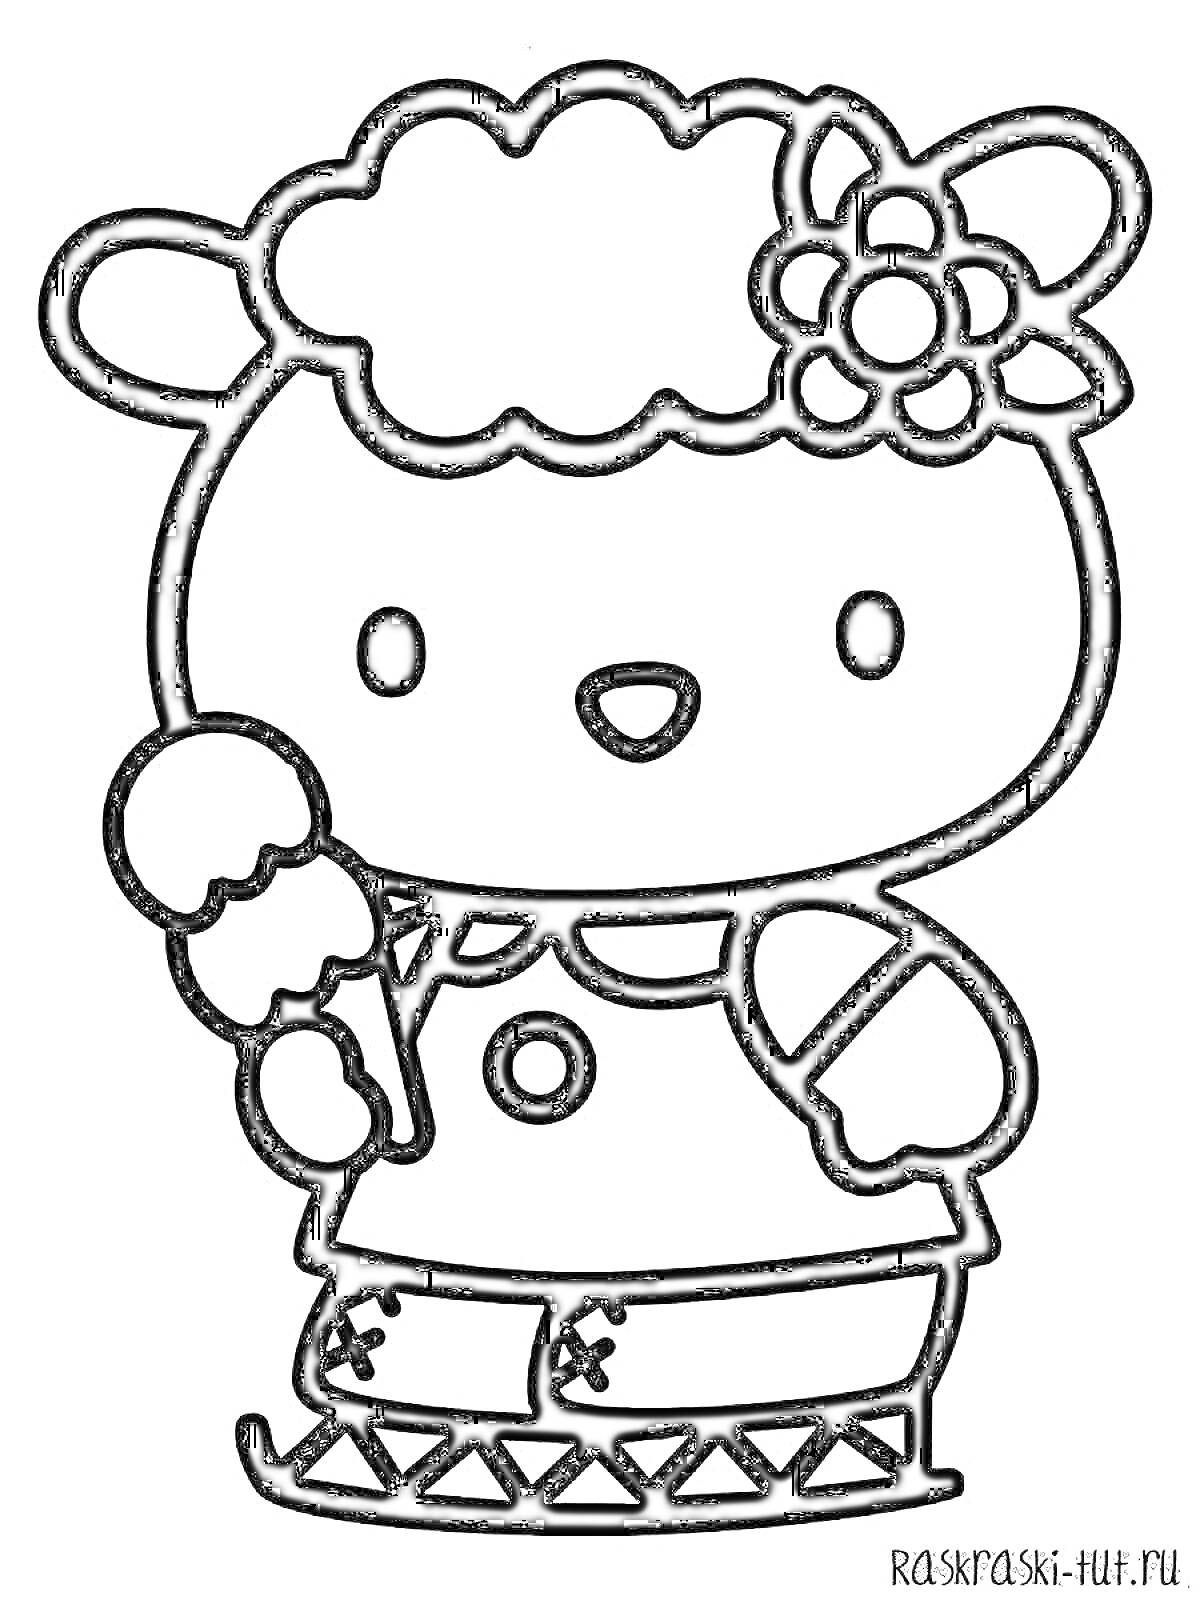 Раскраска Скетч персонажа Хелло Китти с мороженым, одетого в штанишки с декоративной окантовкой и цветком на голове